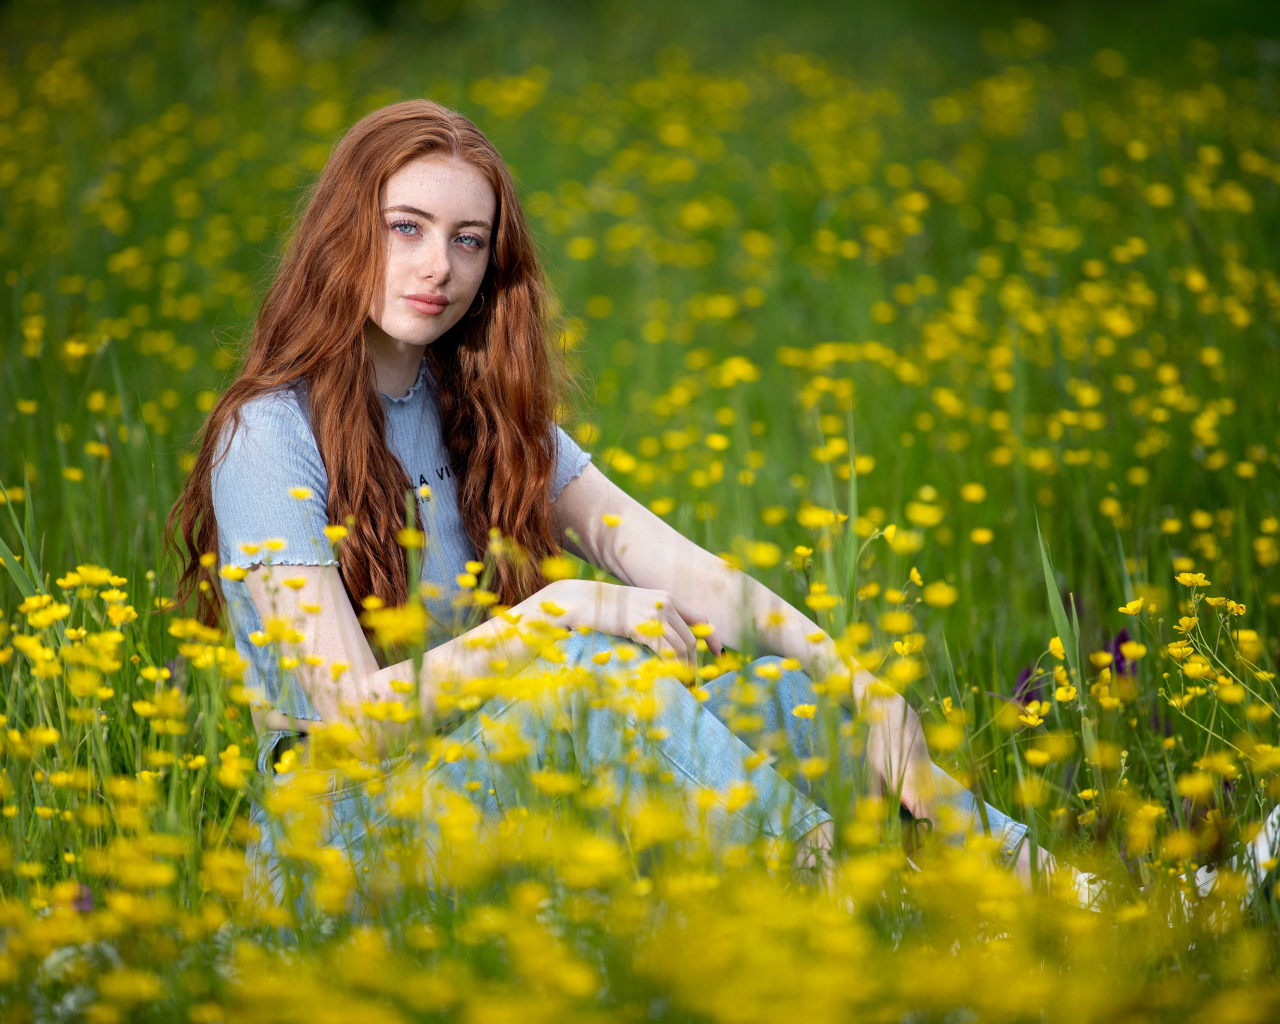 Голубоглазая девушка сидит на поле с желтыми цветами